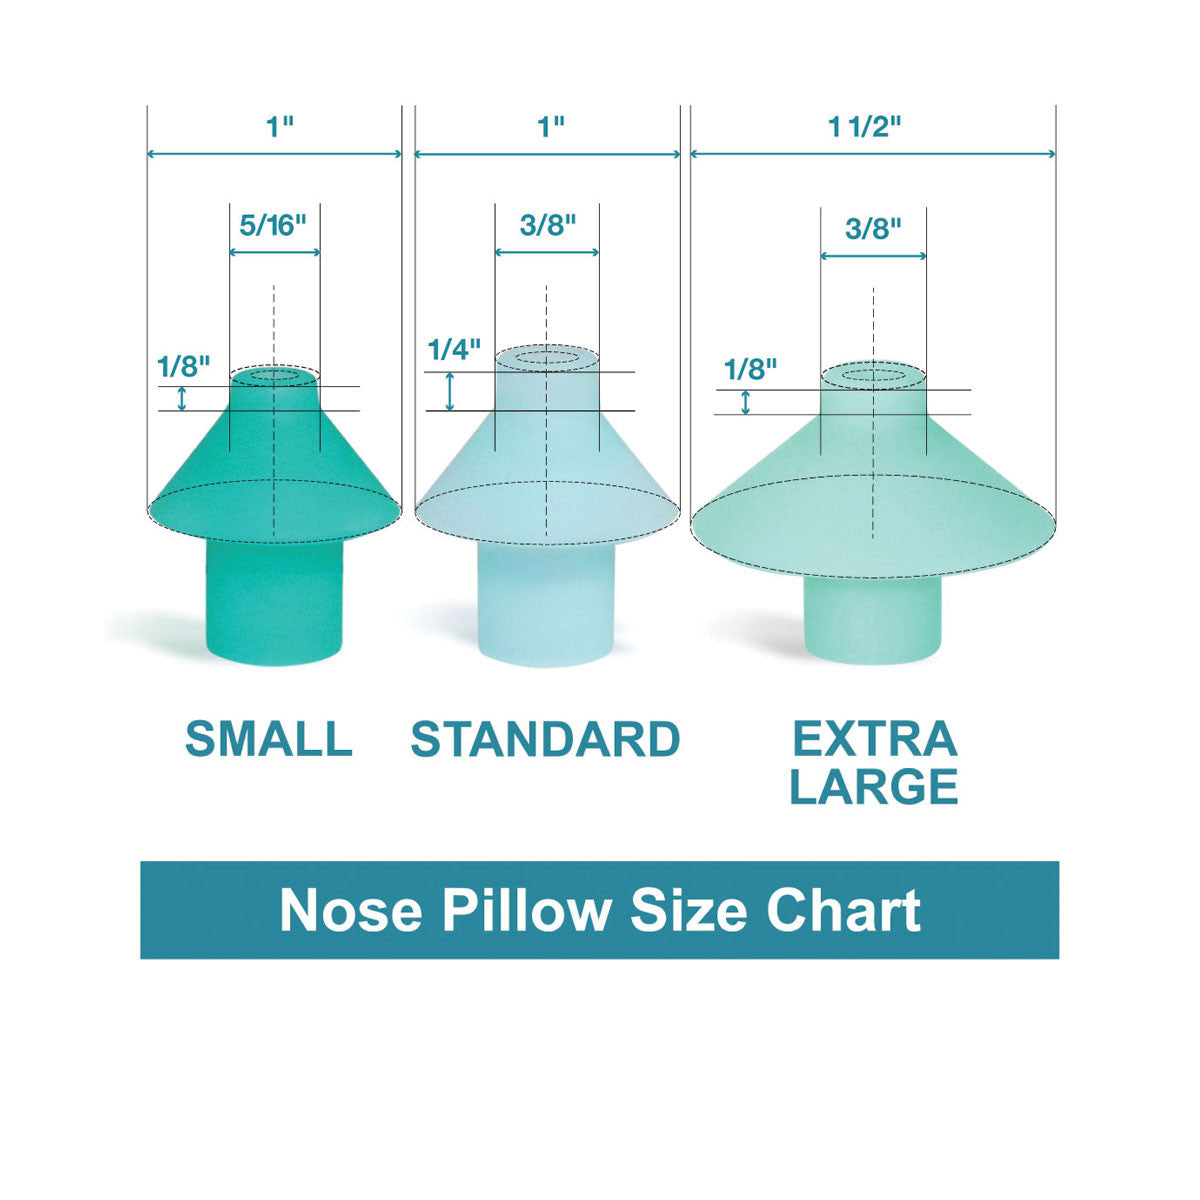 Combinaciones de almohada nasal y muelle nasal